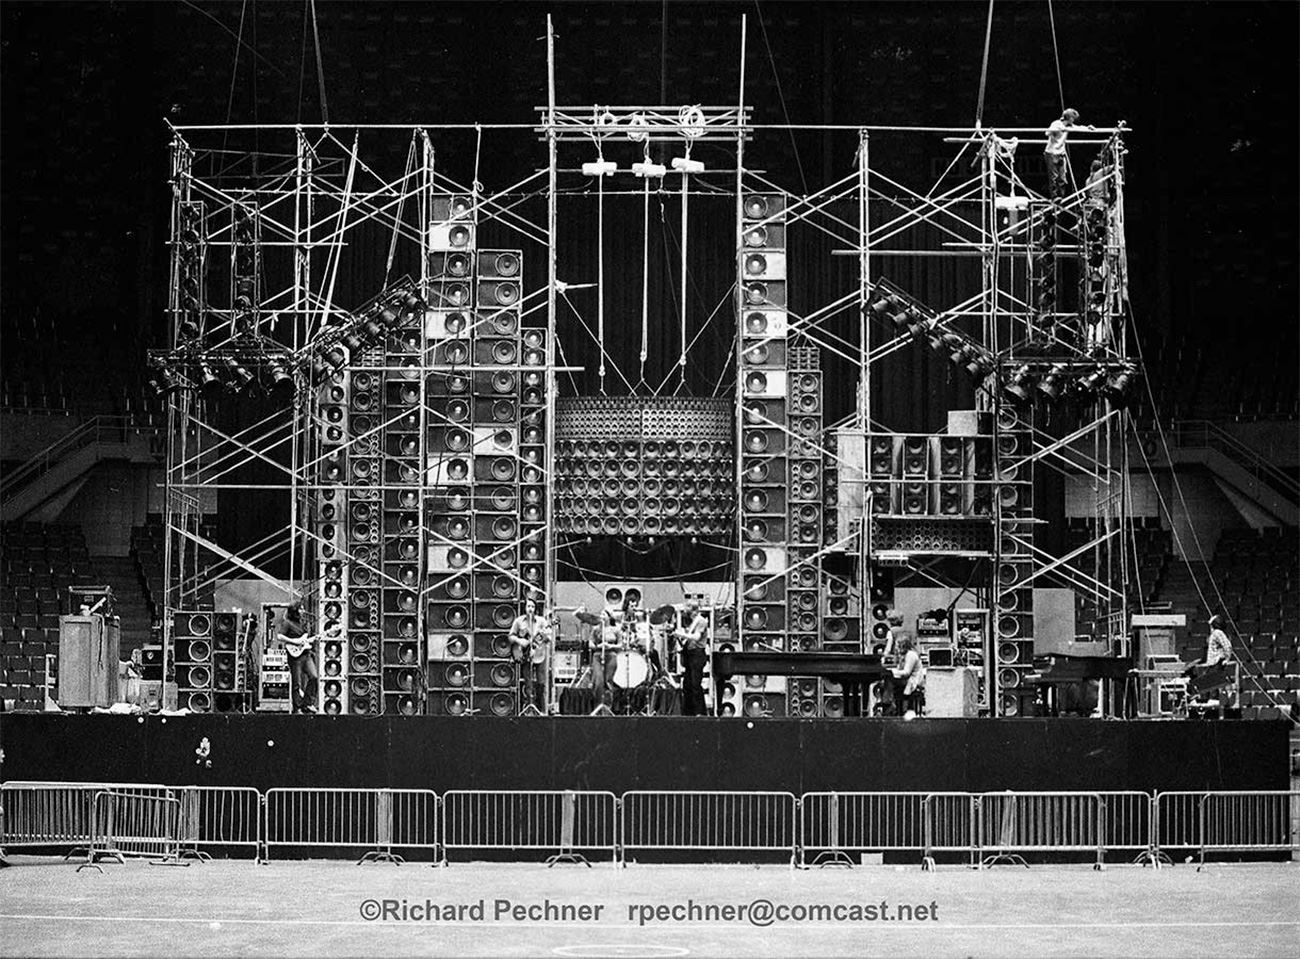 1974년 록 밴드 그레이트풀 데드(Grateful Dead)의 라이브 공연을 위해 설계된 사운드 시스템, 월 오브 사운드(Wall of Sound)